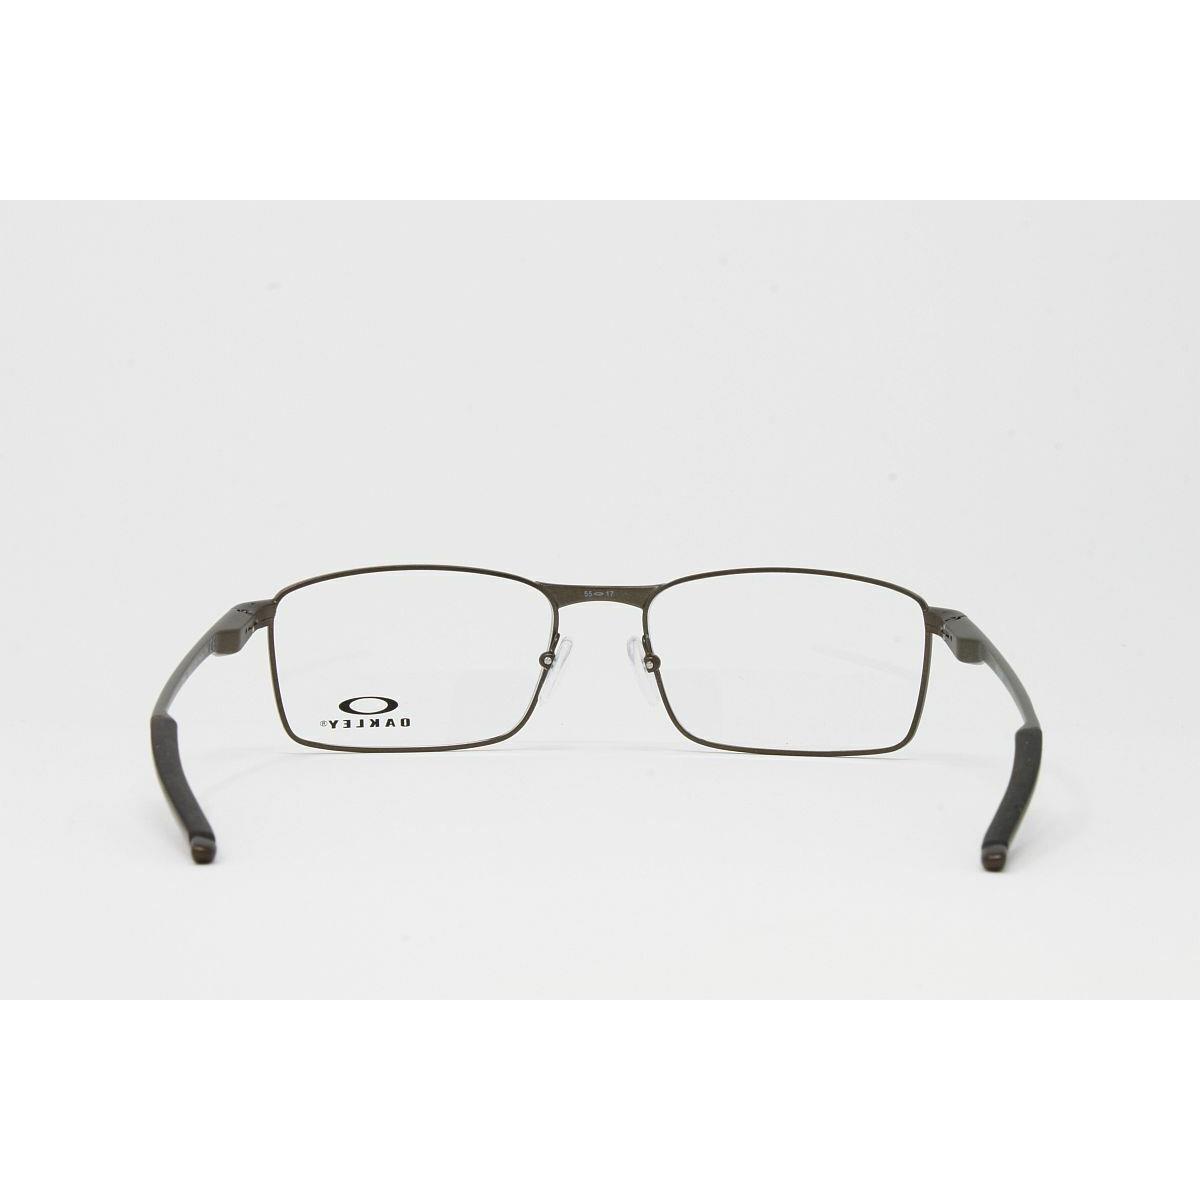 Oakley eyeglasses Optical Fuller - Gray Frame